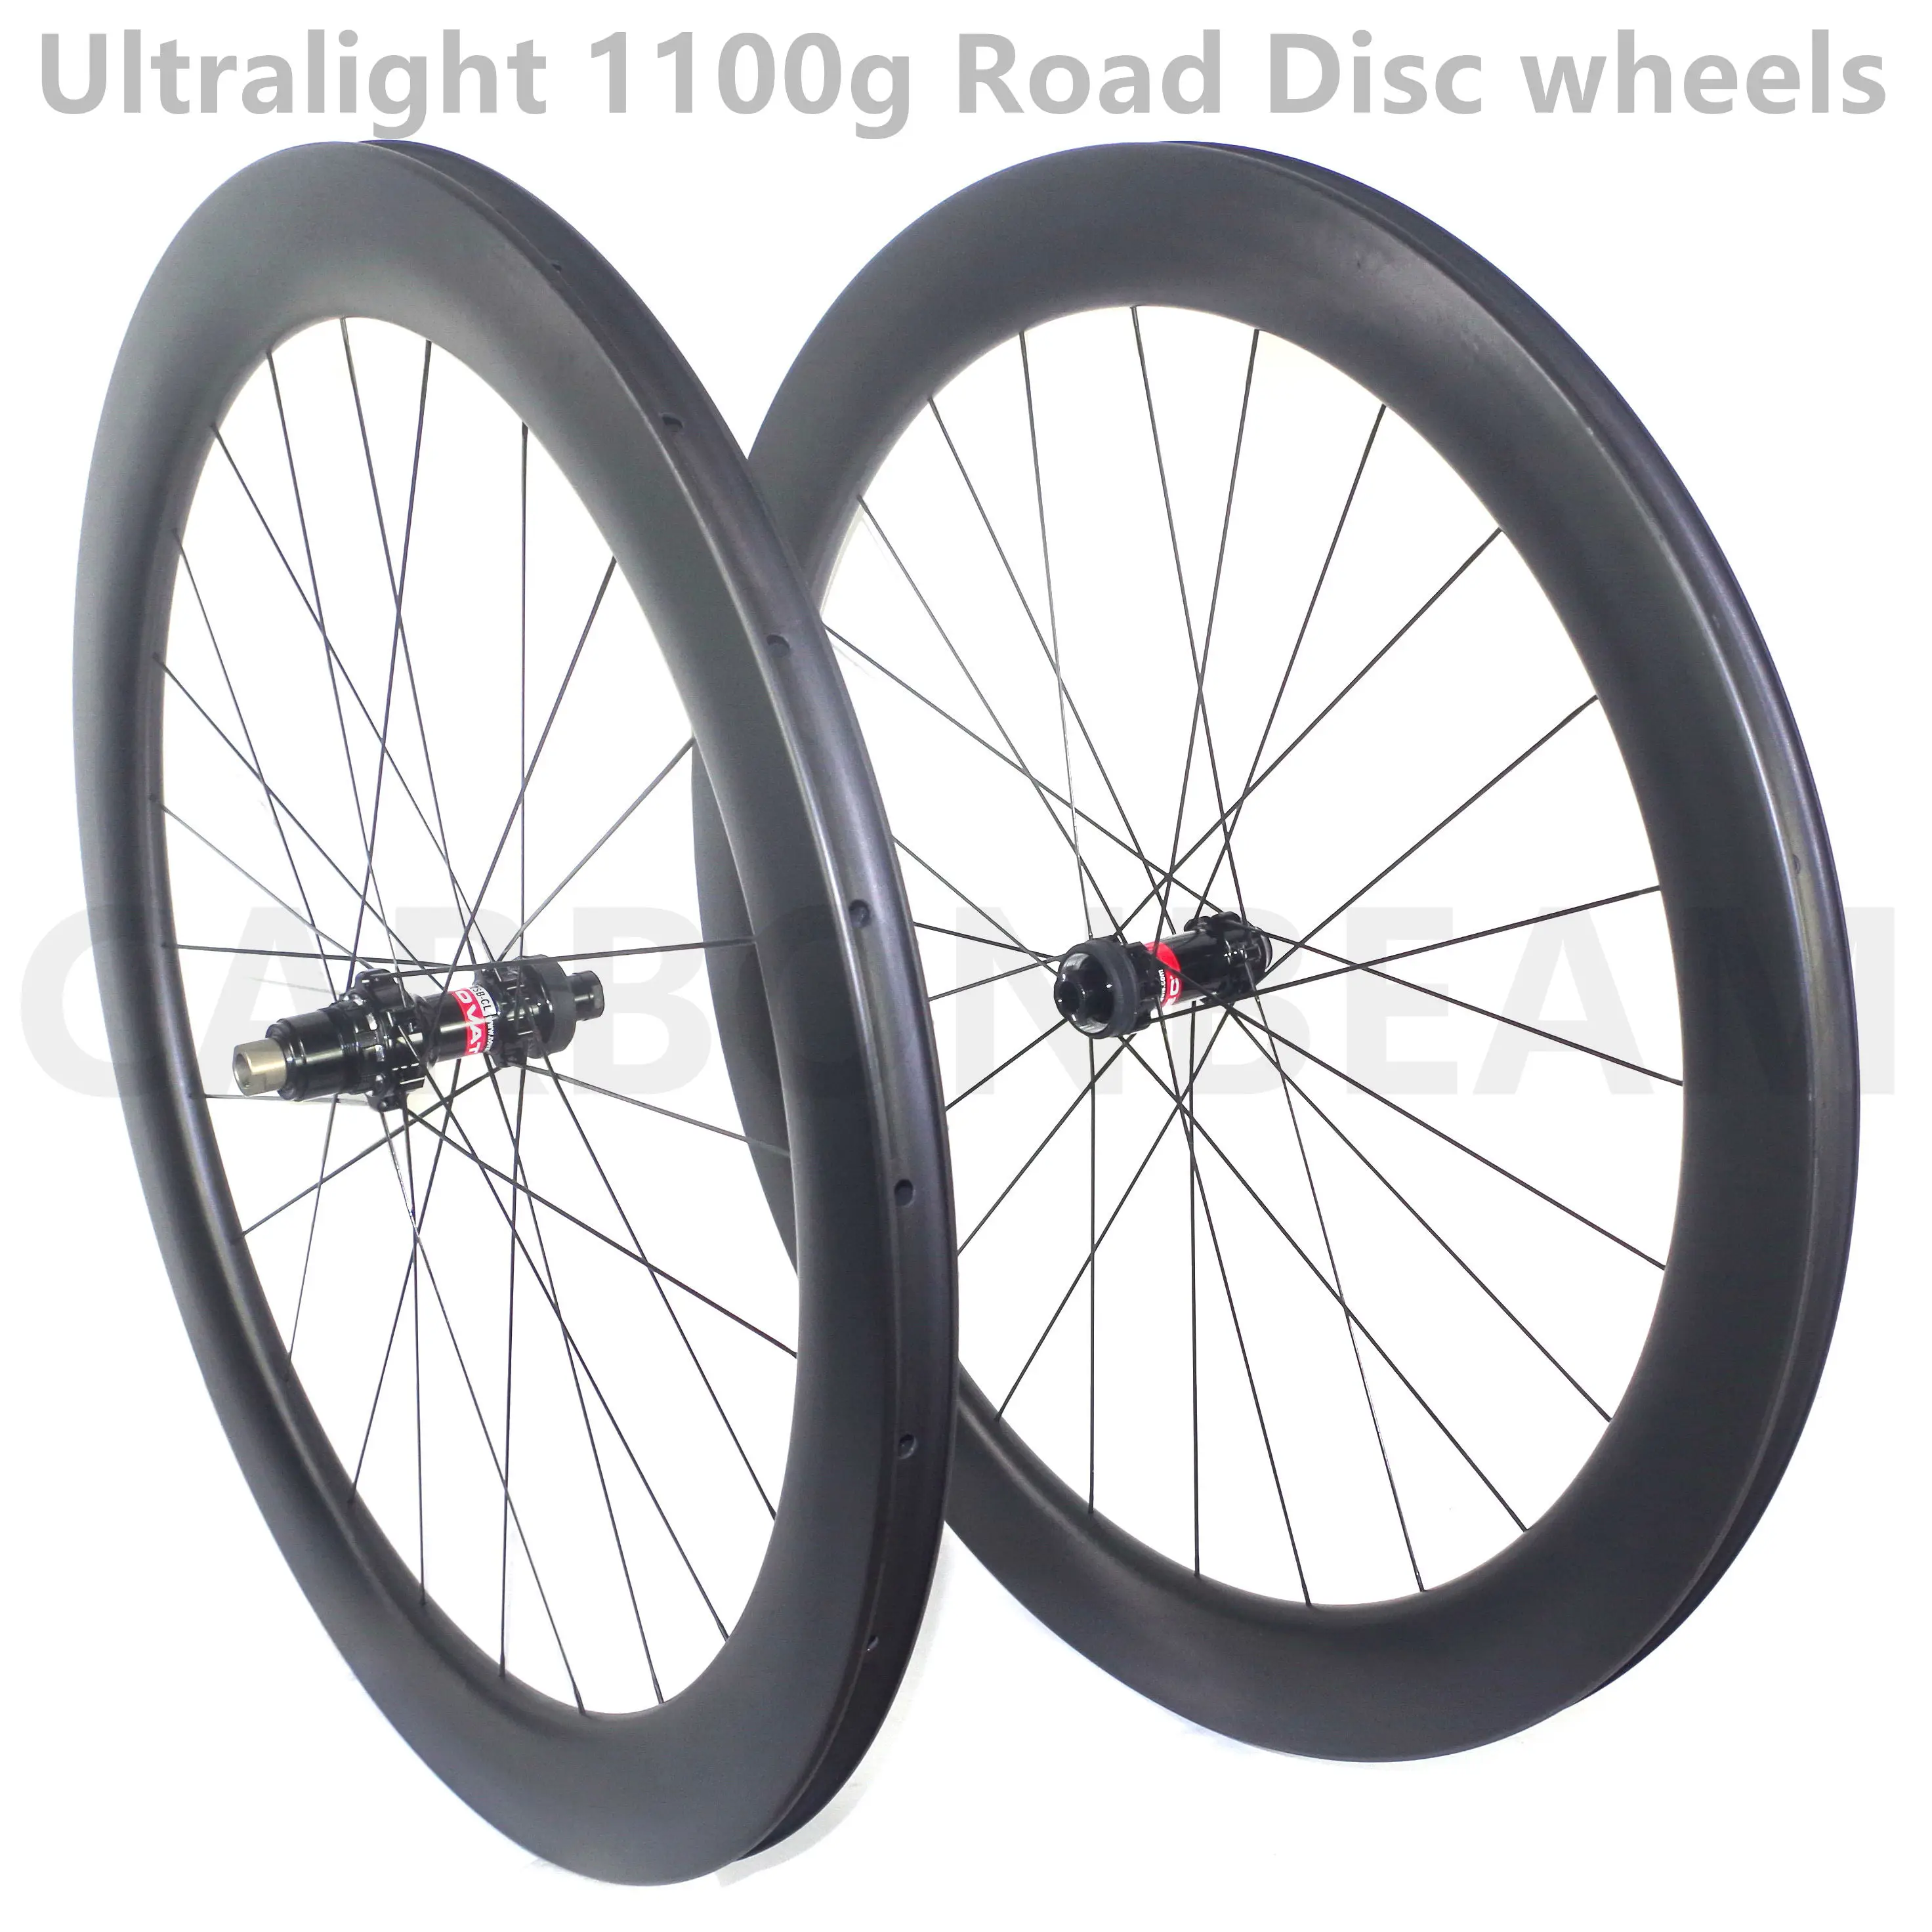 25mm cyclocross tires